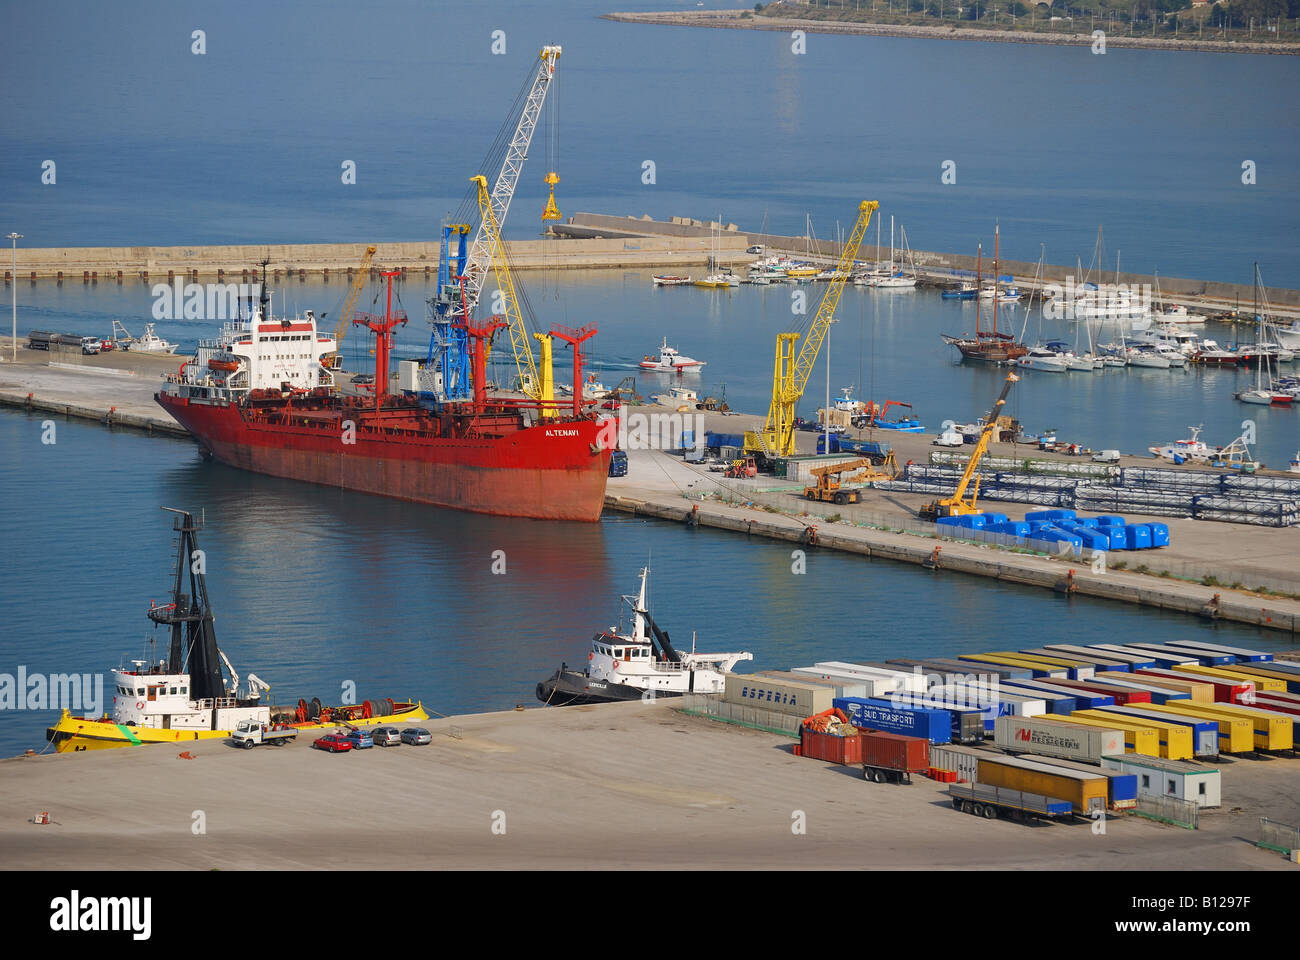 Sbarco in porto, Termini Imerese, Provincia di Palermo, Sicilia, Italia Foto Stock